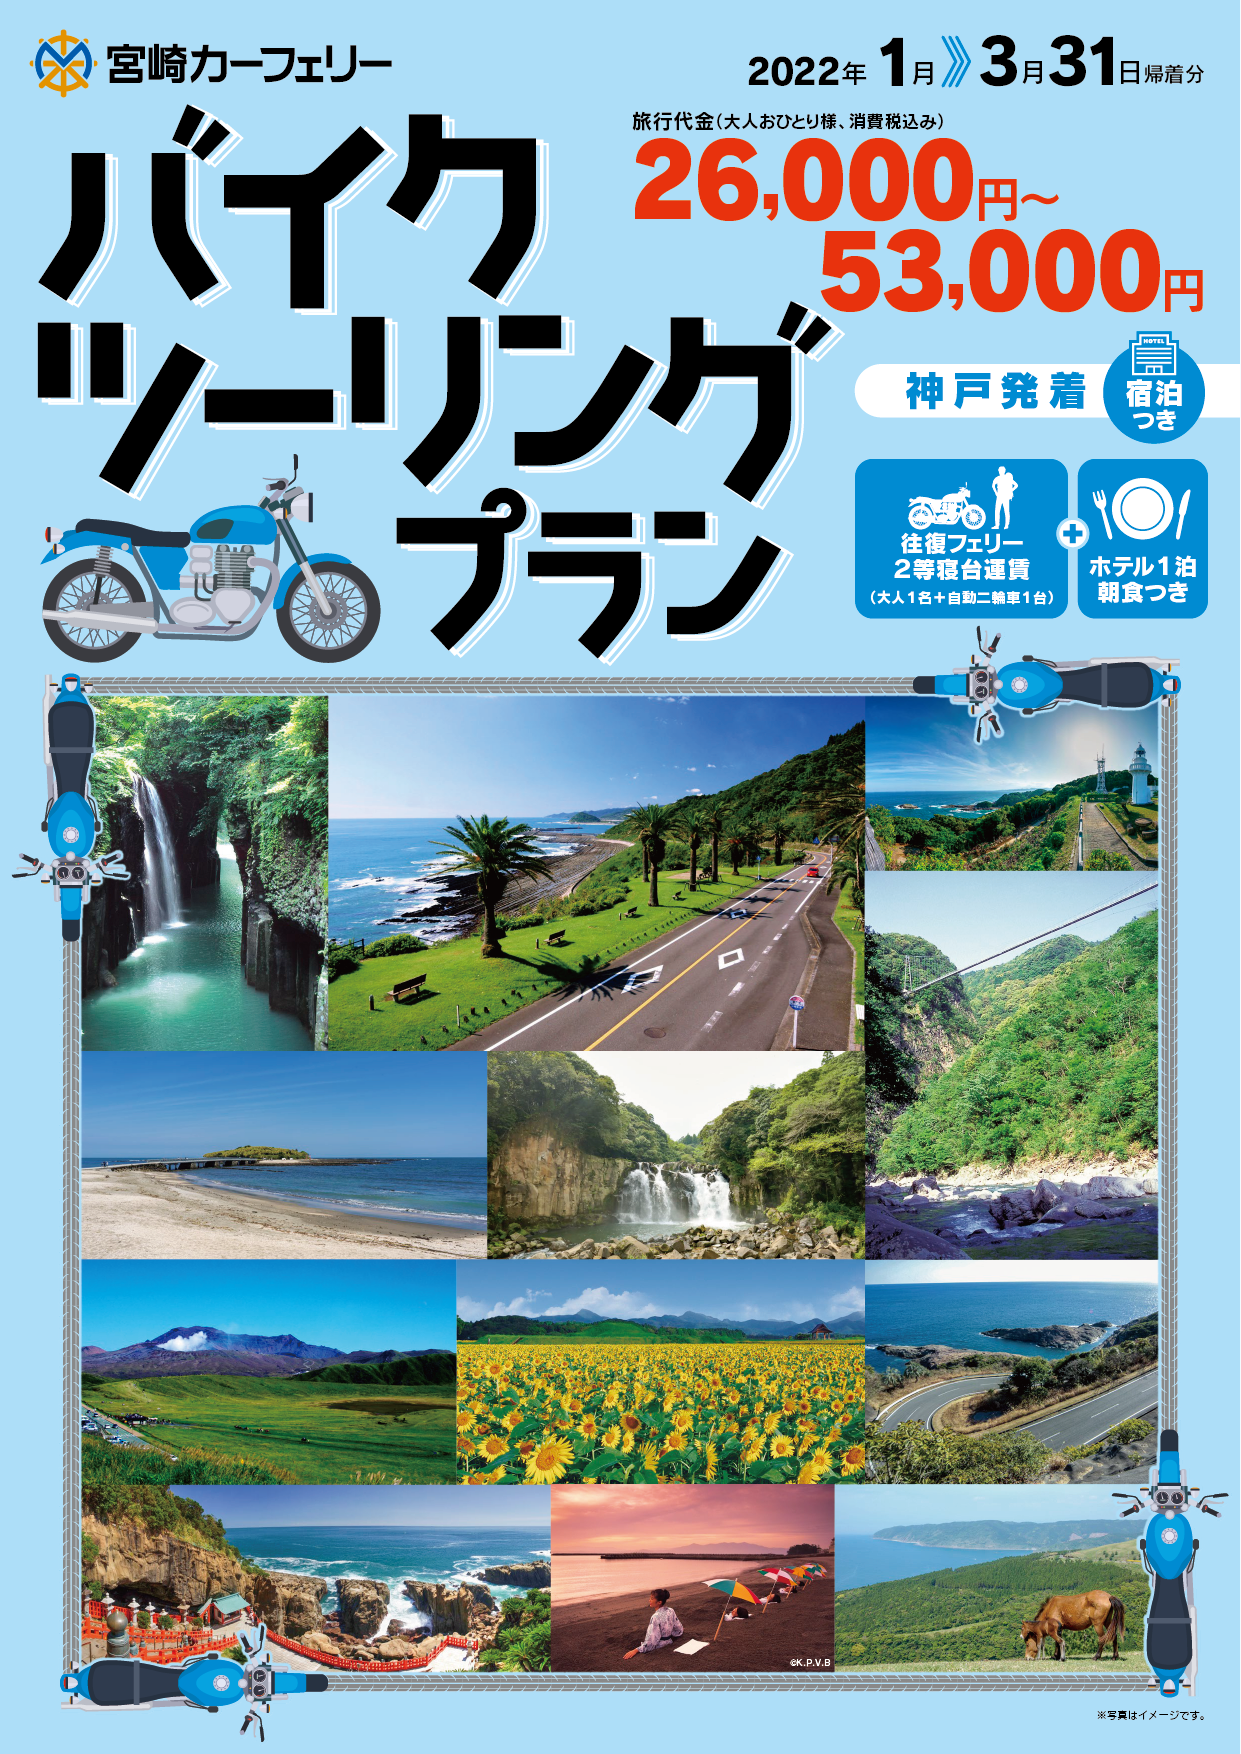 バイクツーリングプラン 神戸発着 2022年1月〜3月31日帰着分までのプラン （宿泊付き）